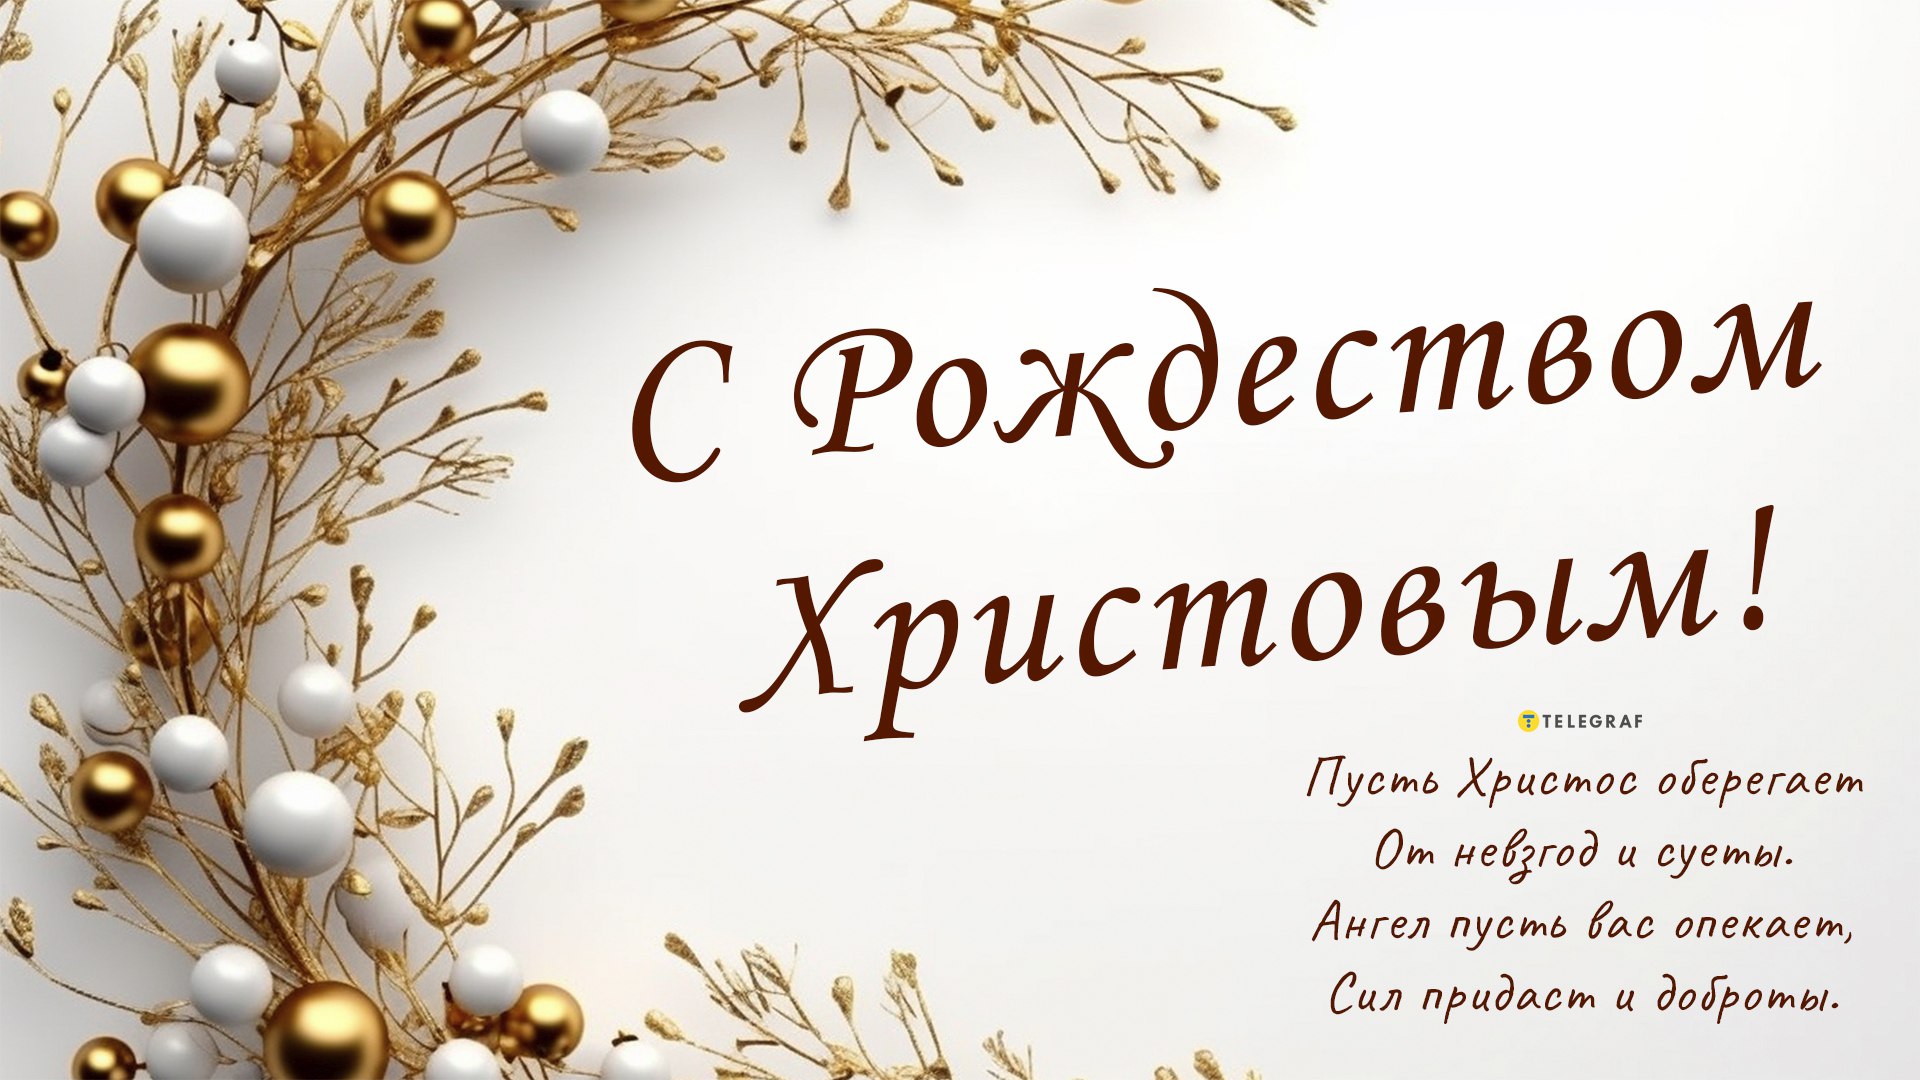 Поздравляем с Рождеством Христовым! Красивые открытки и картинки к празднику